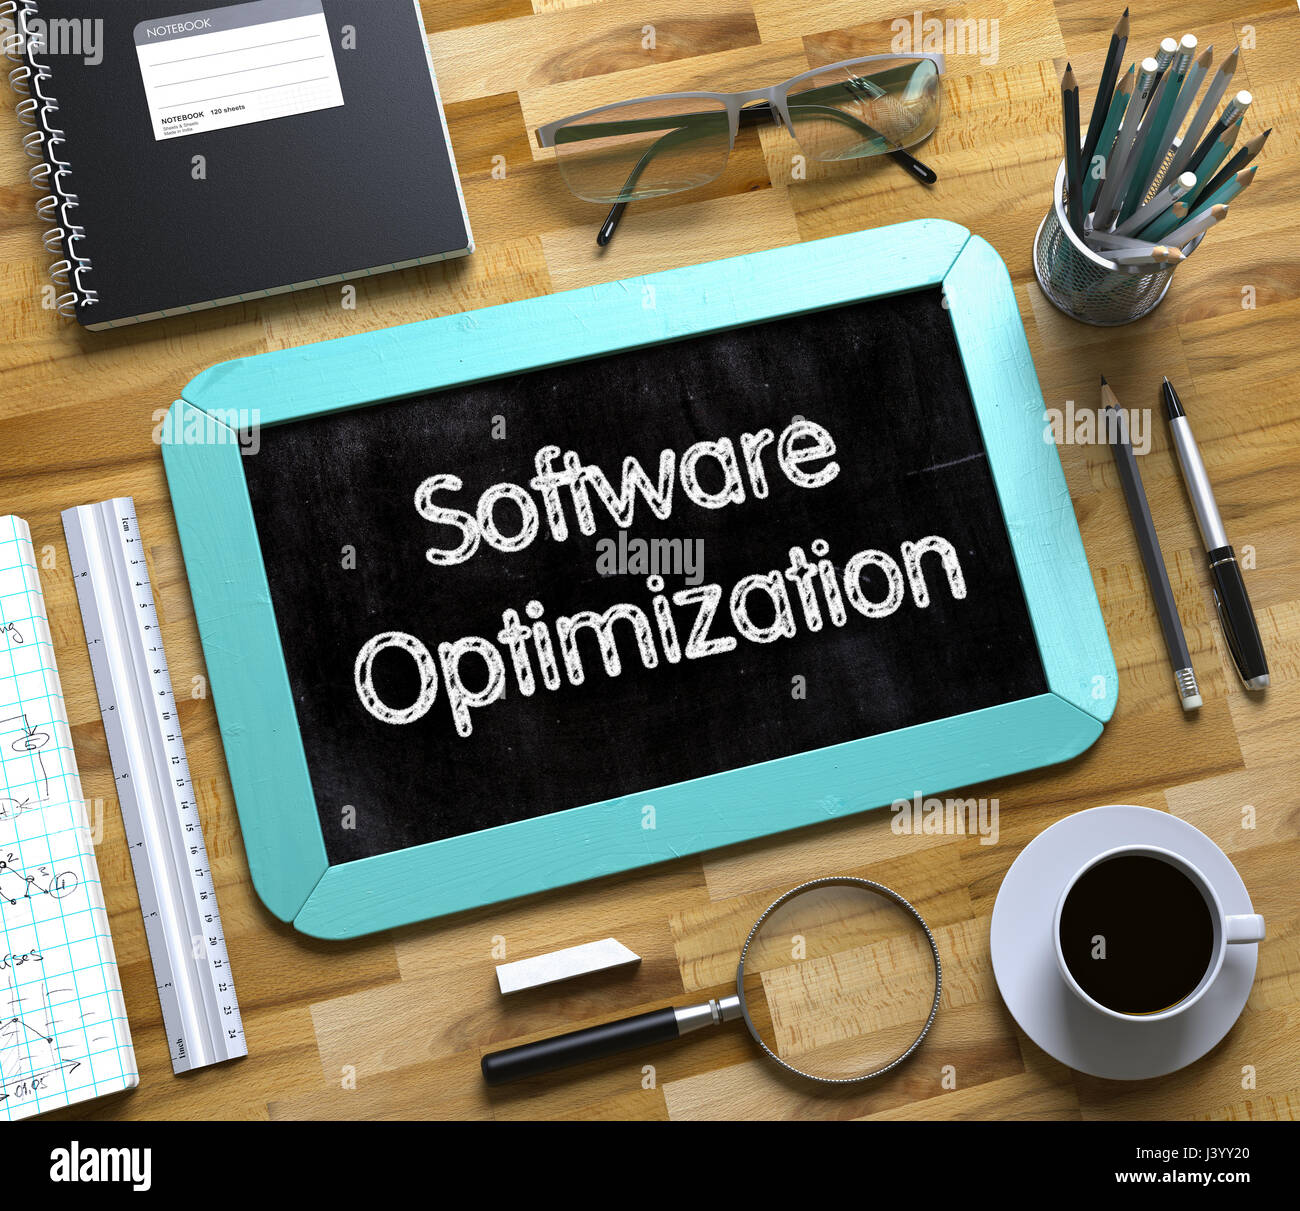 Software-Optimierung handschriftlich auf kleinen Tafel. 3D. Stockfoto